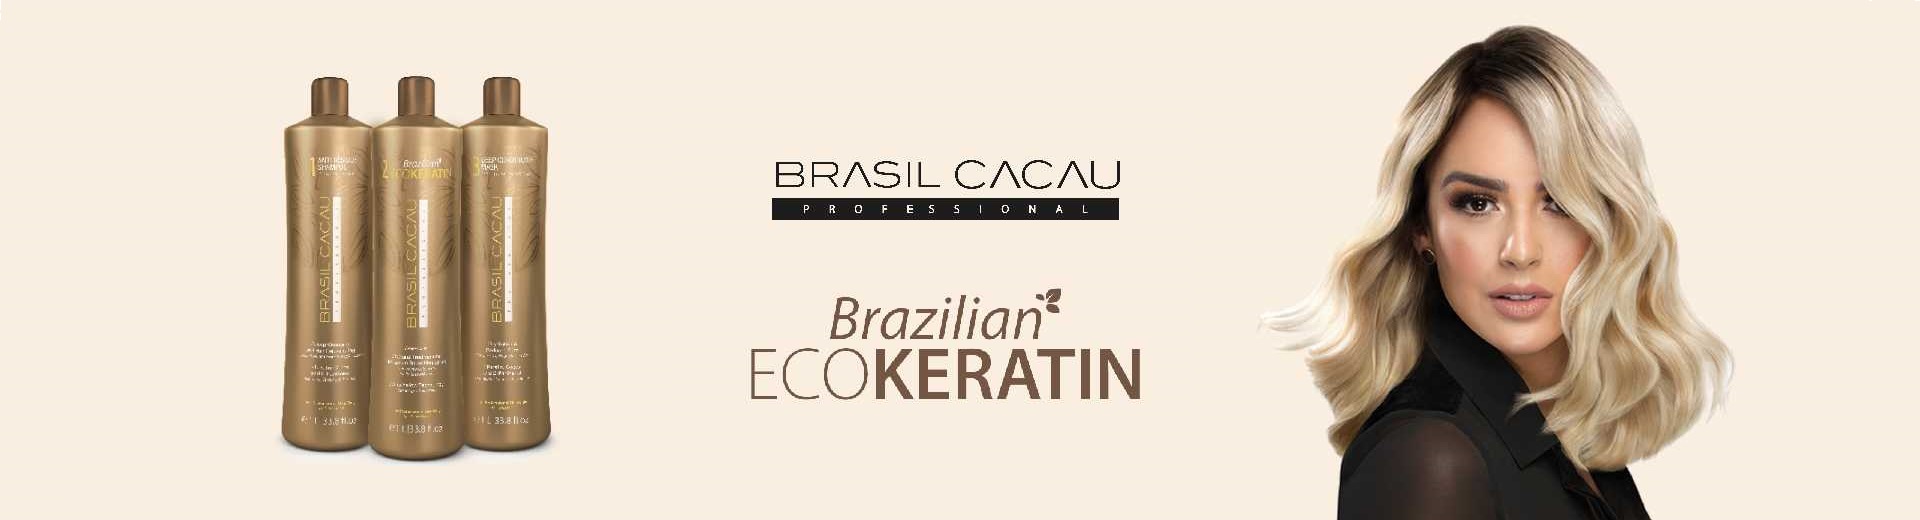 slide /fotky992/slider/Banner_Brazilian_ECOKeratin_1.jpg